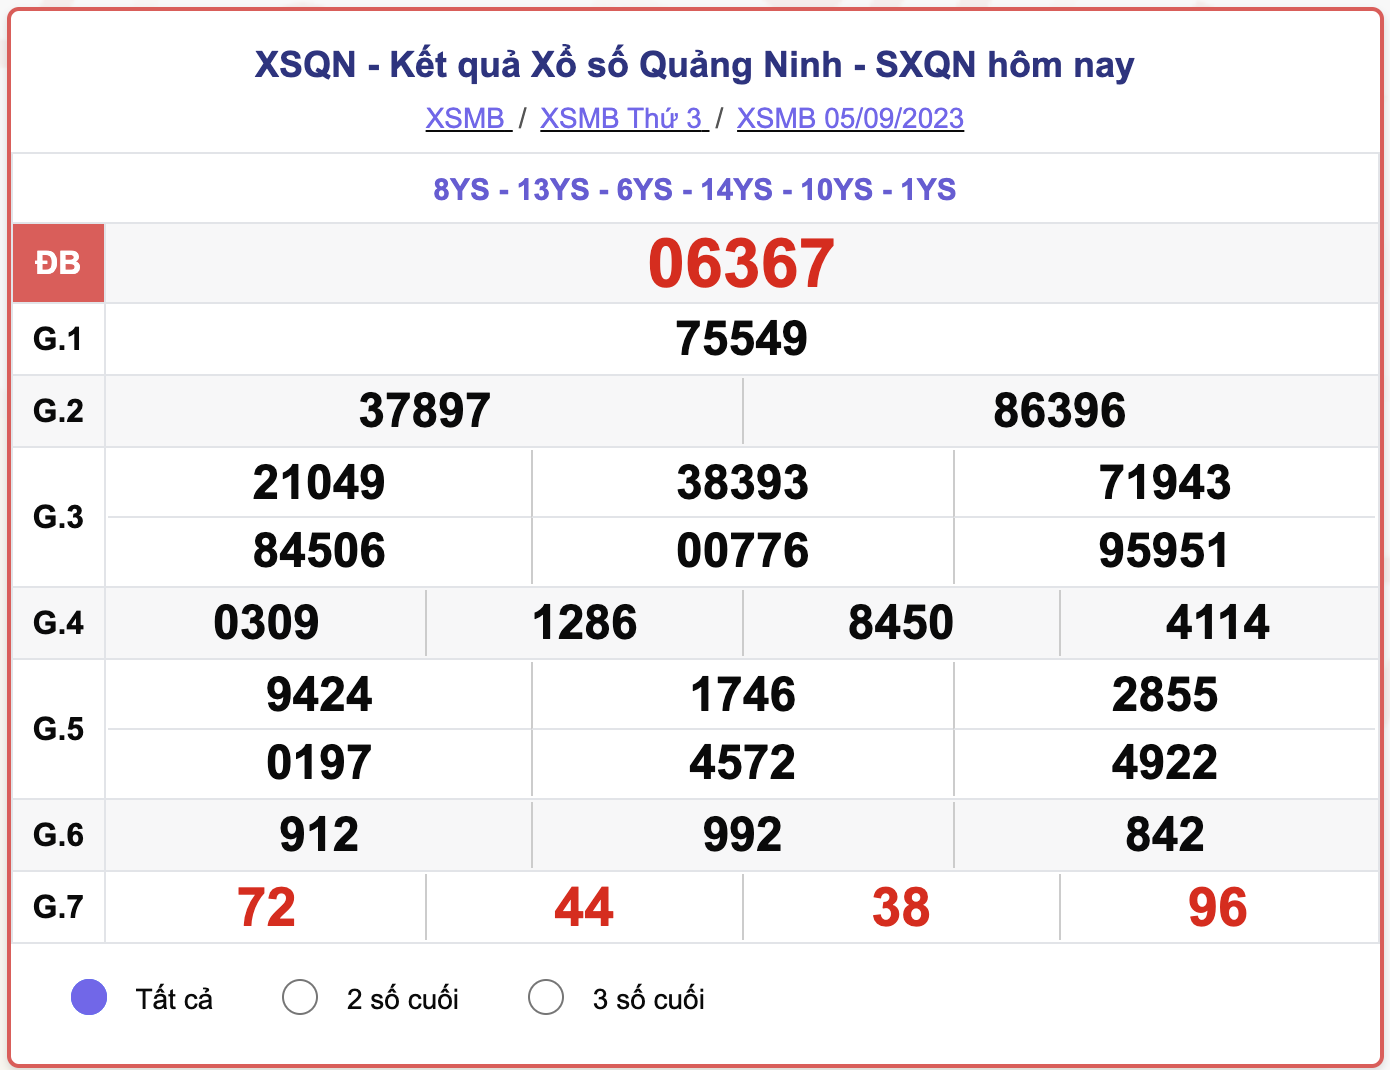 XSMB thứ 3, kết quả xổ số Quảng Ninh ngày 5/9/2023